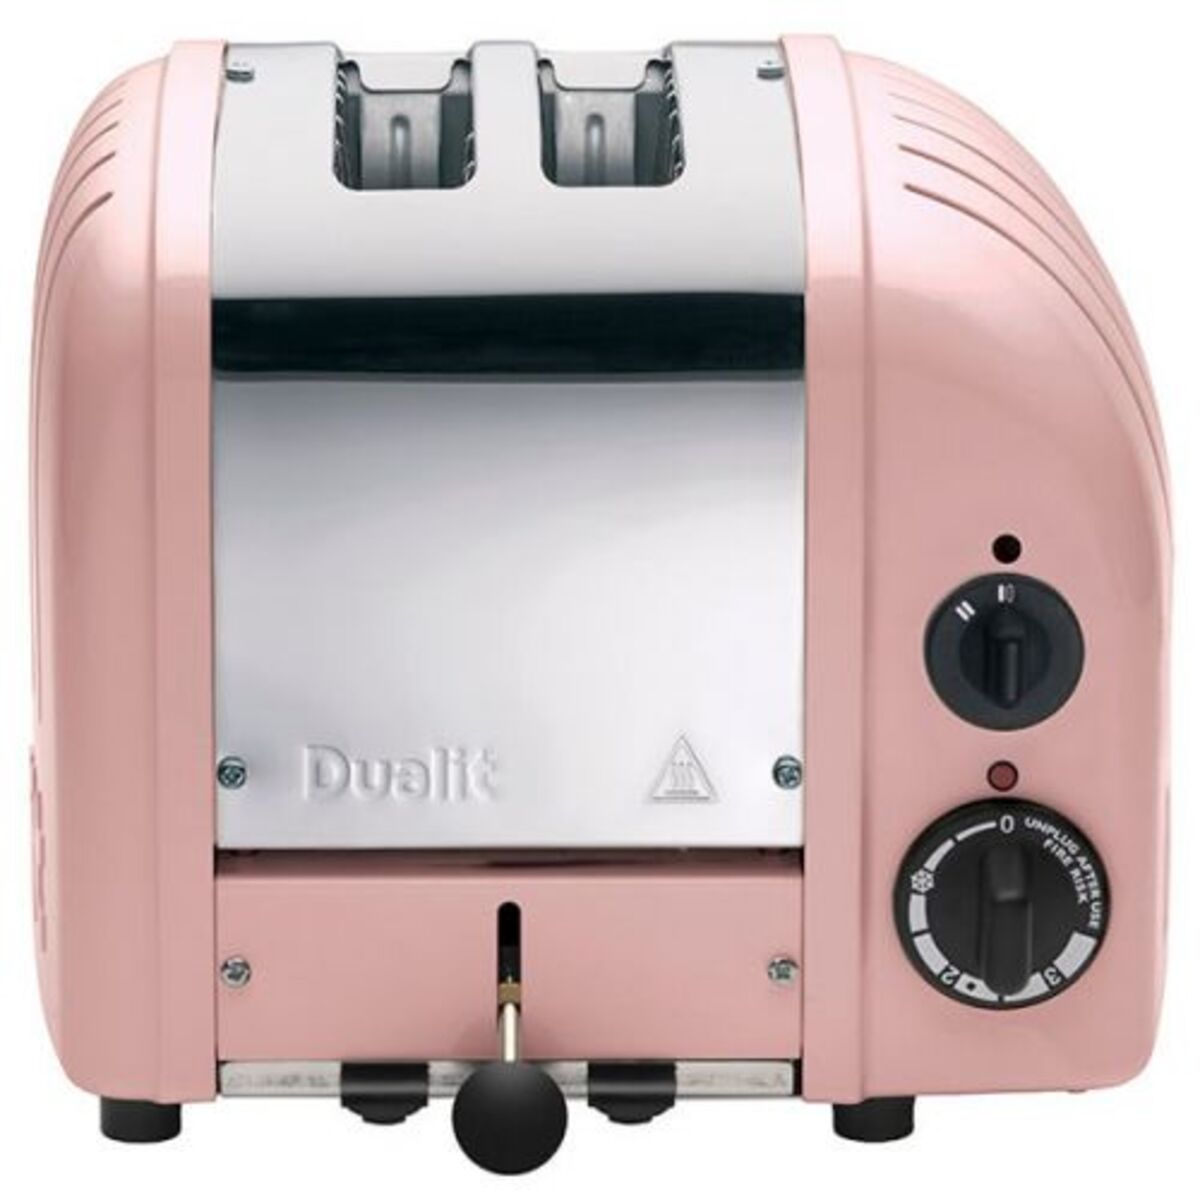 Dualit 20440 Classic Vario AWS 2 Slot Toaster, Petal Pink